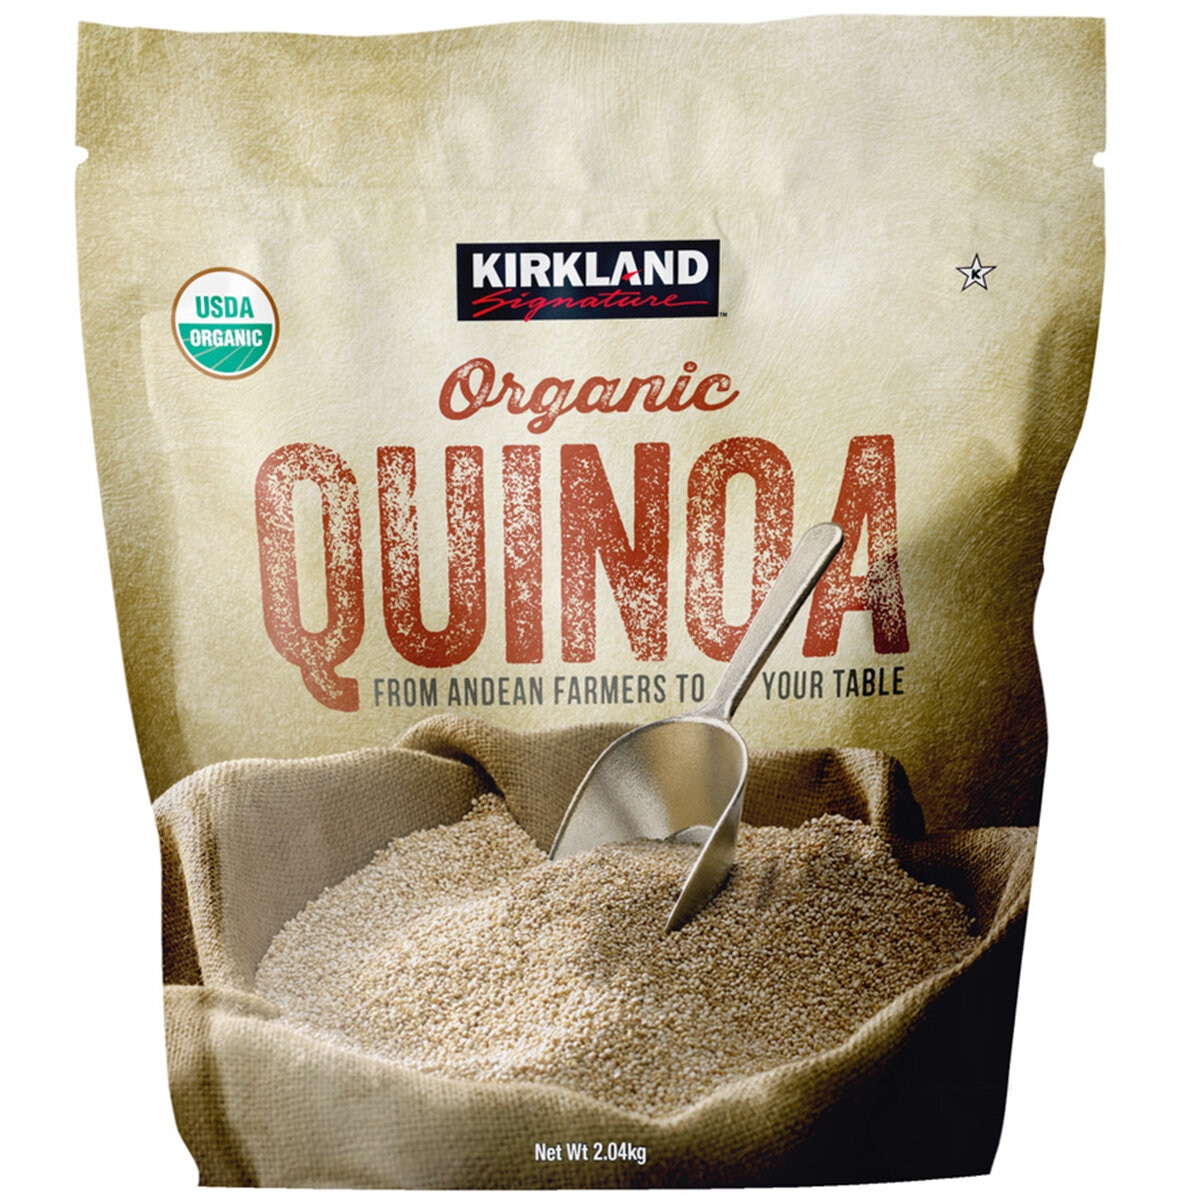 Kirkland Signature Organic Quinoa 2.04kg | Costco Australia